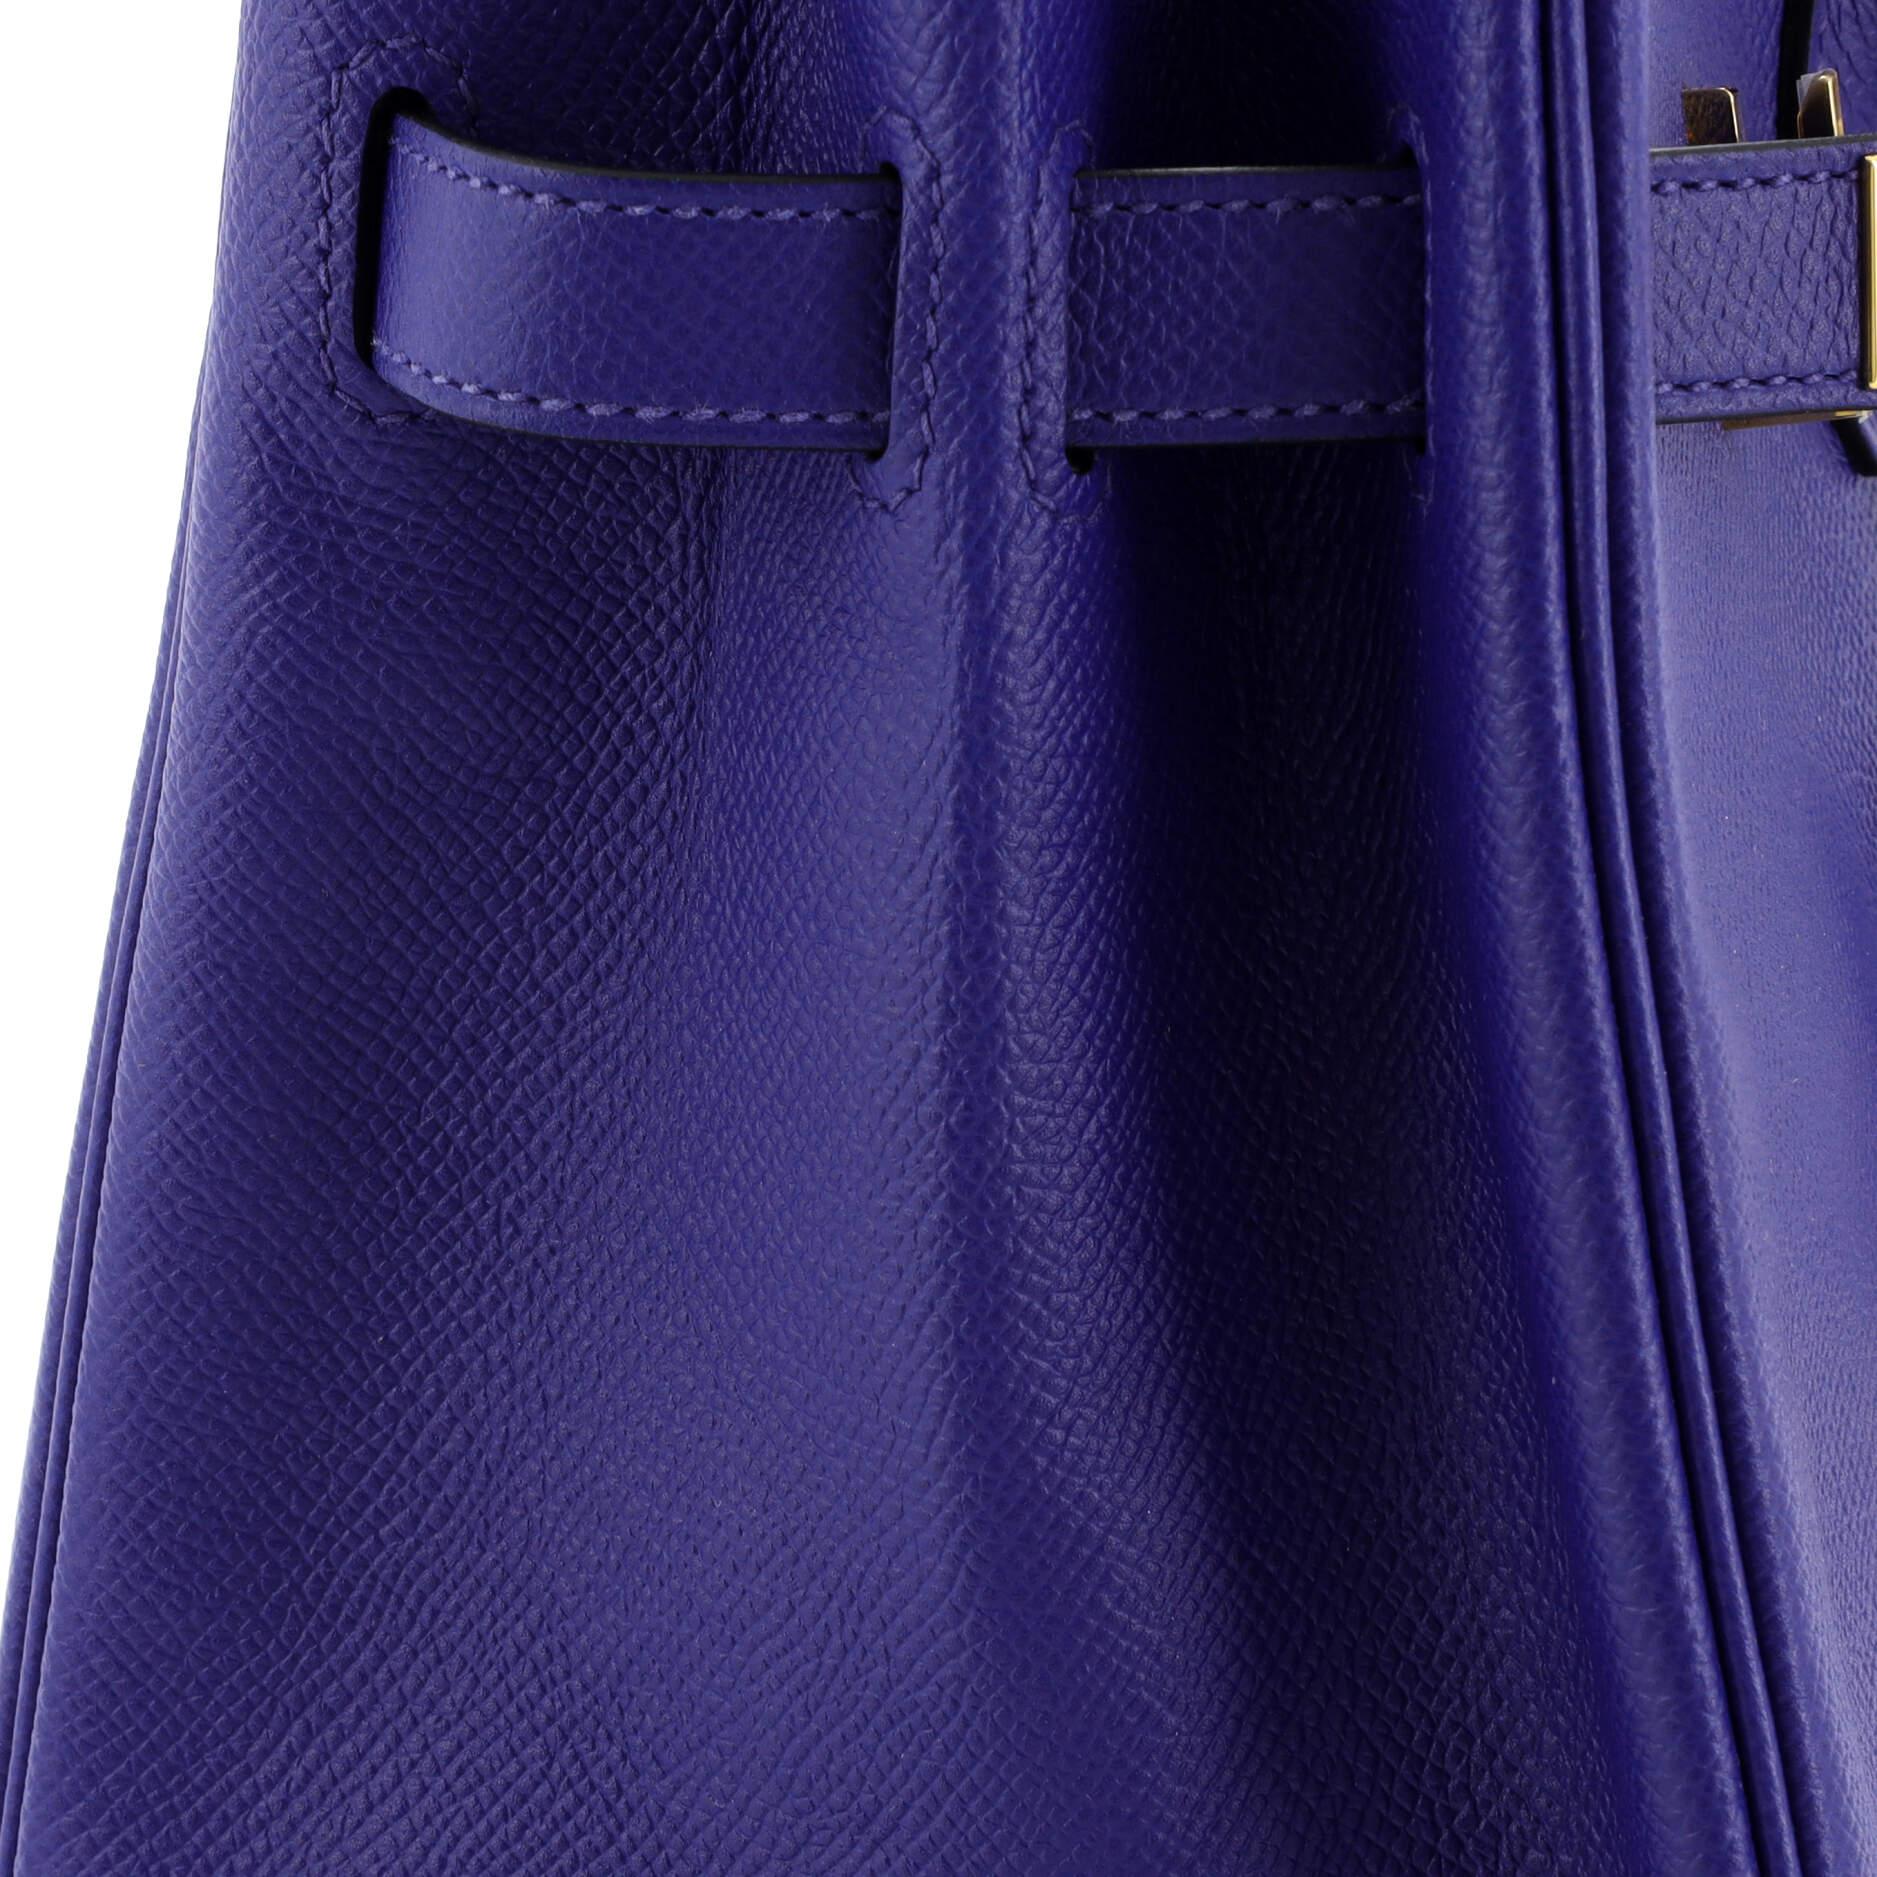 Hermes Birkin Handbag Bleu Electrique Epsom with Gold Hardware 30 For Sale 3